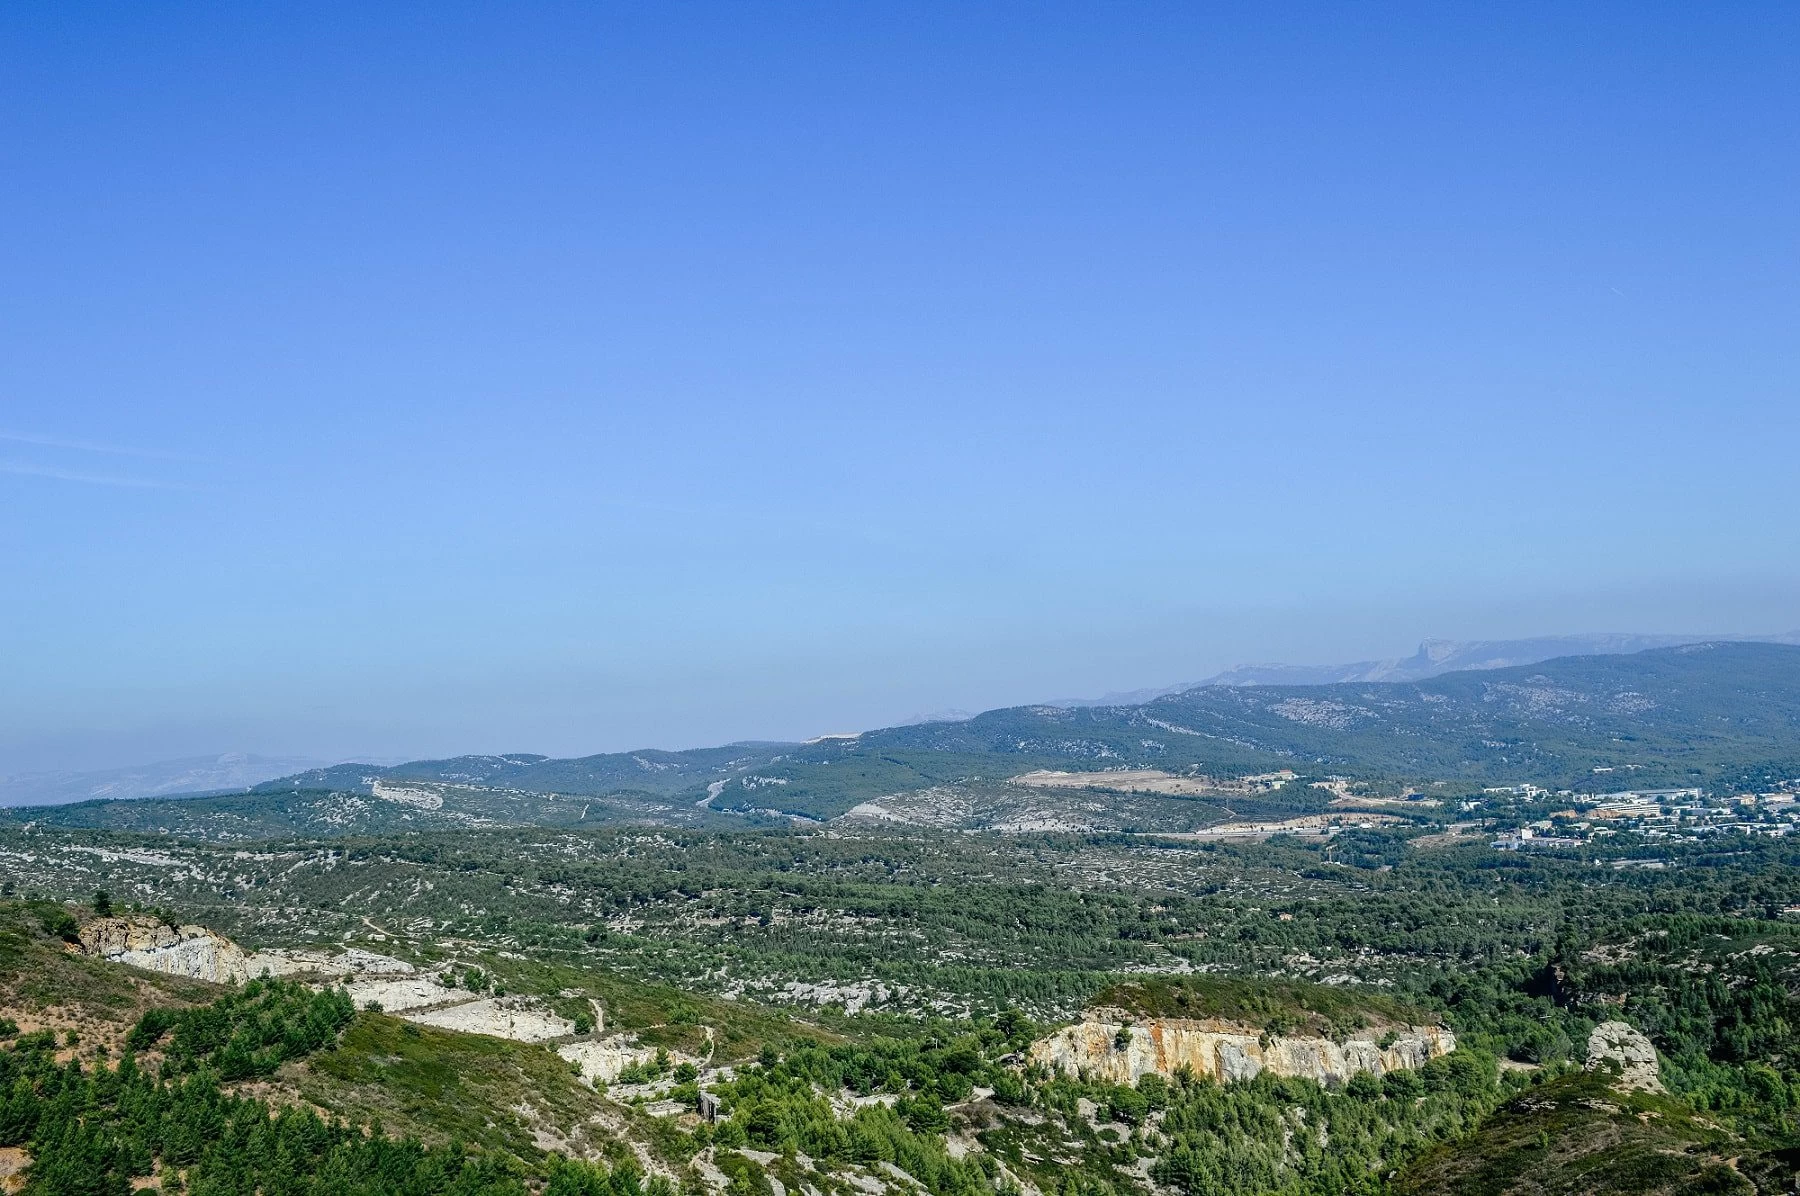 Amazing views along La route des cretes